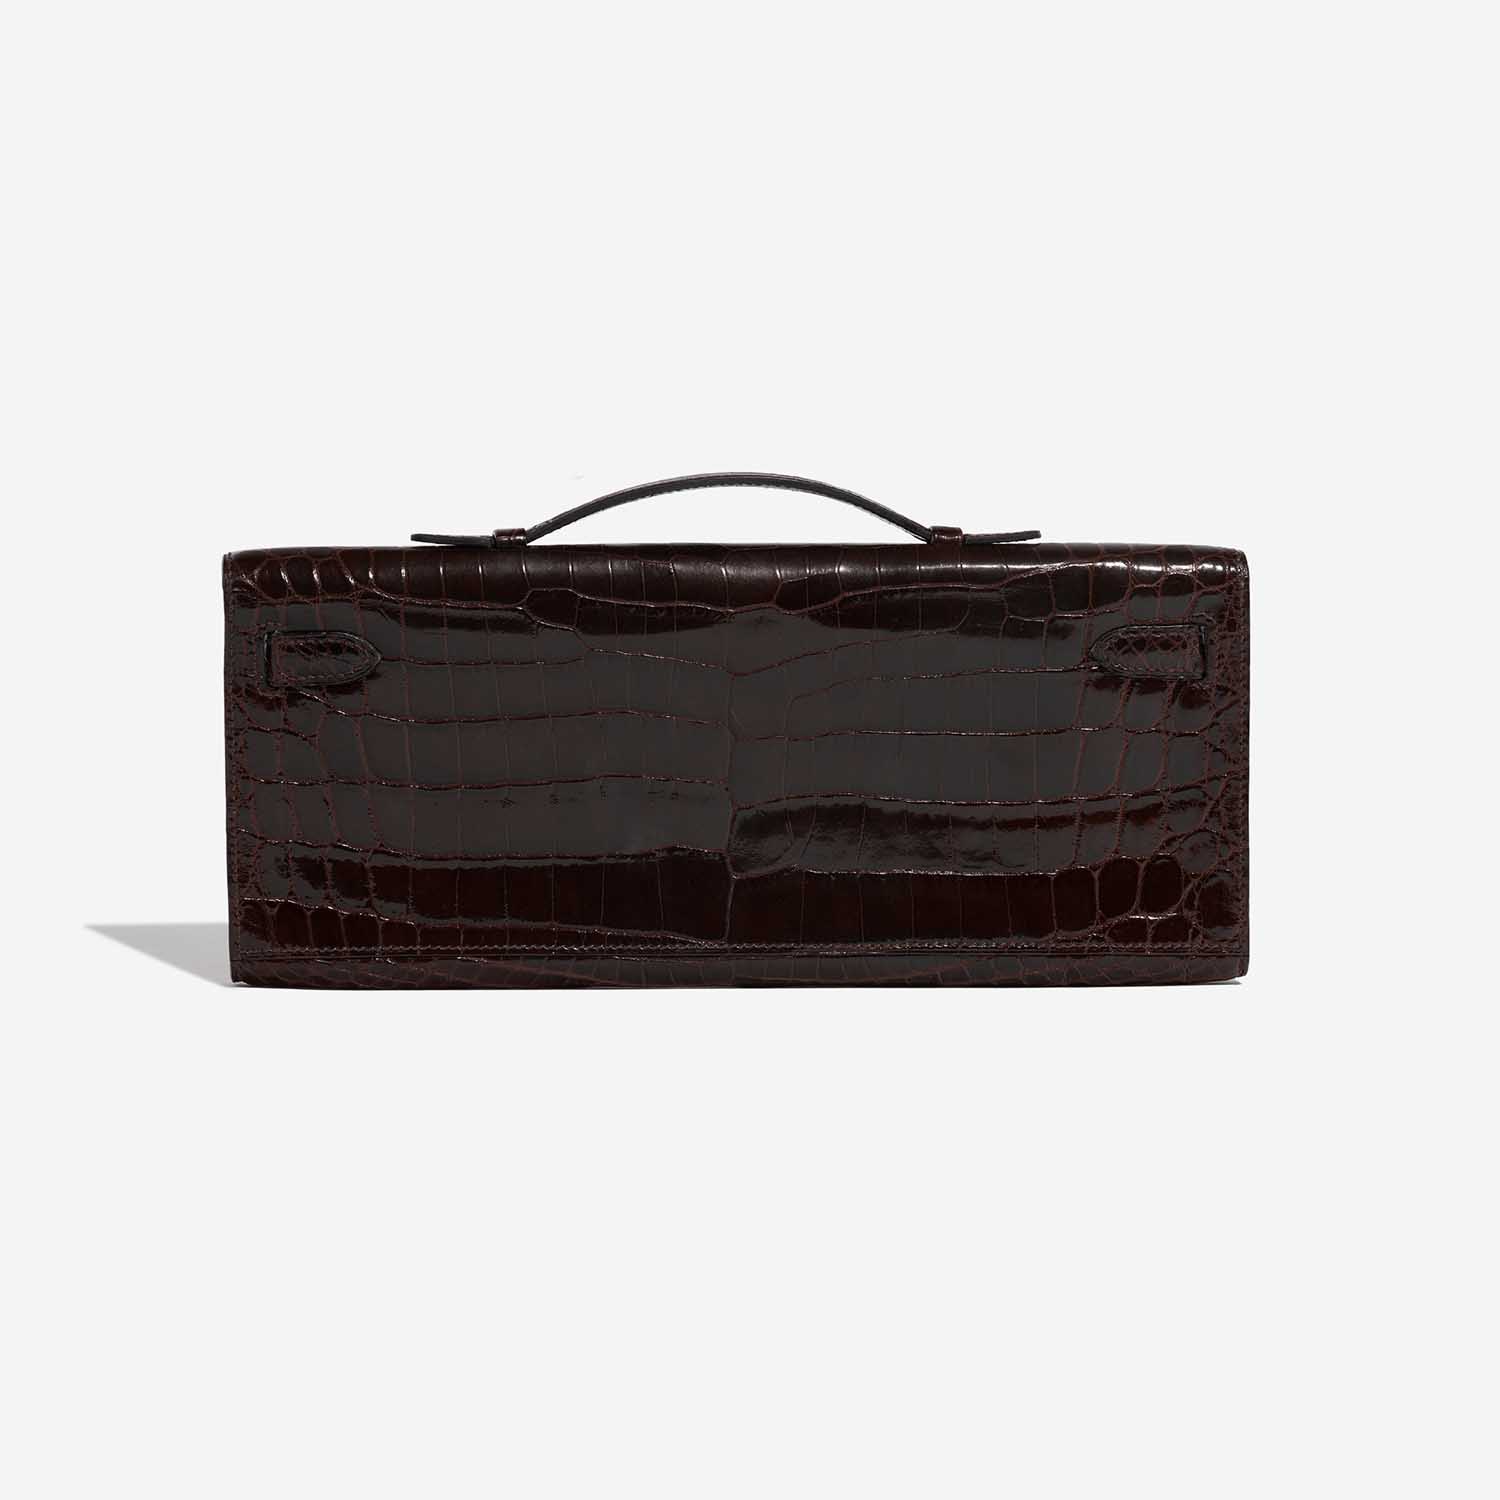 Pre-owned Hermès Tasche Kelly Cut Clutch Niloticus Crocodile Chocolat Brown Back | Verkaufen Sie Ihre Designer-Tasche auf Saclab.com